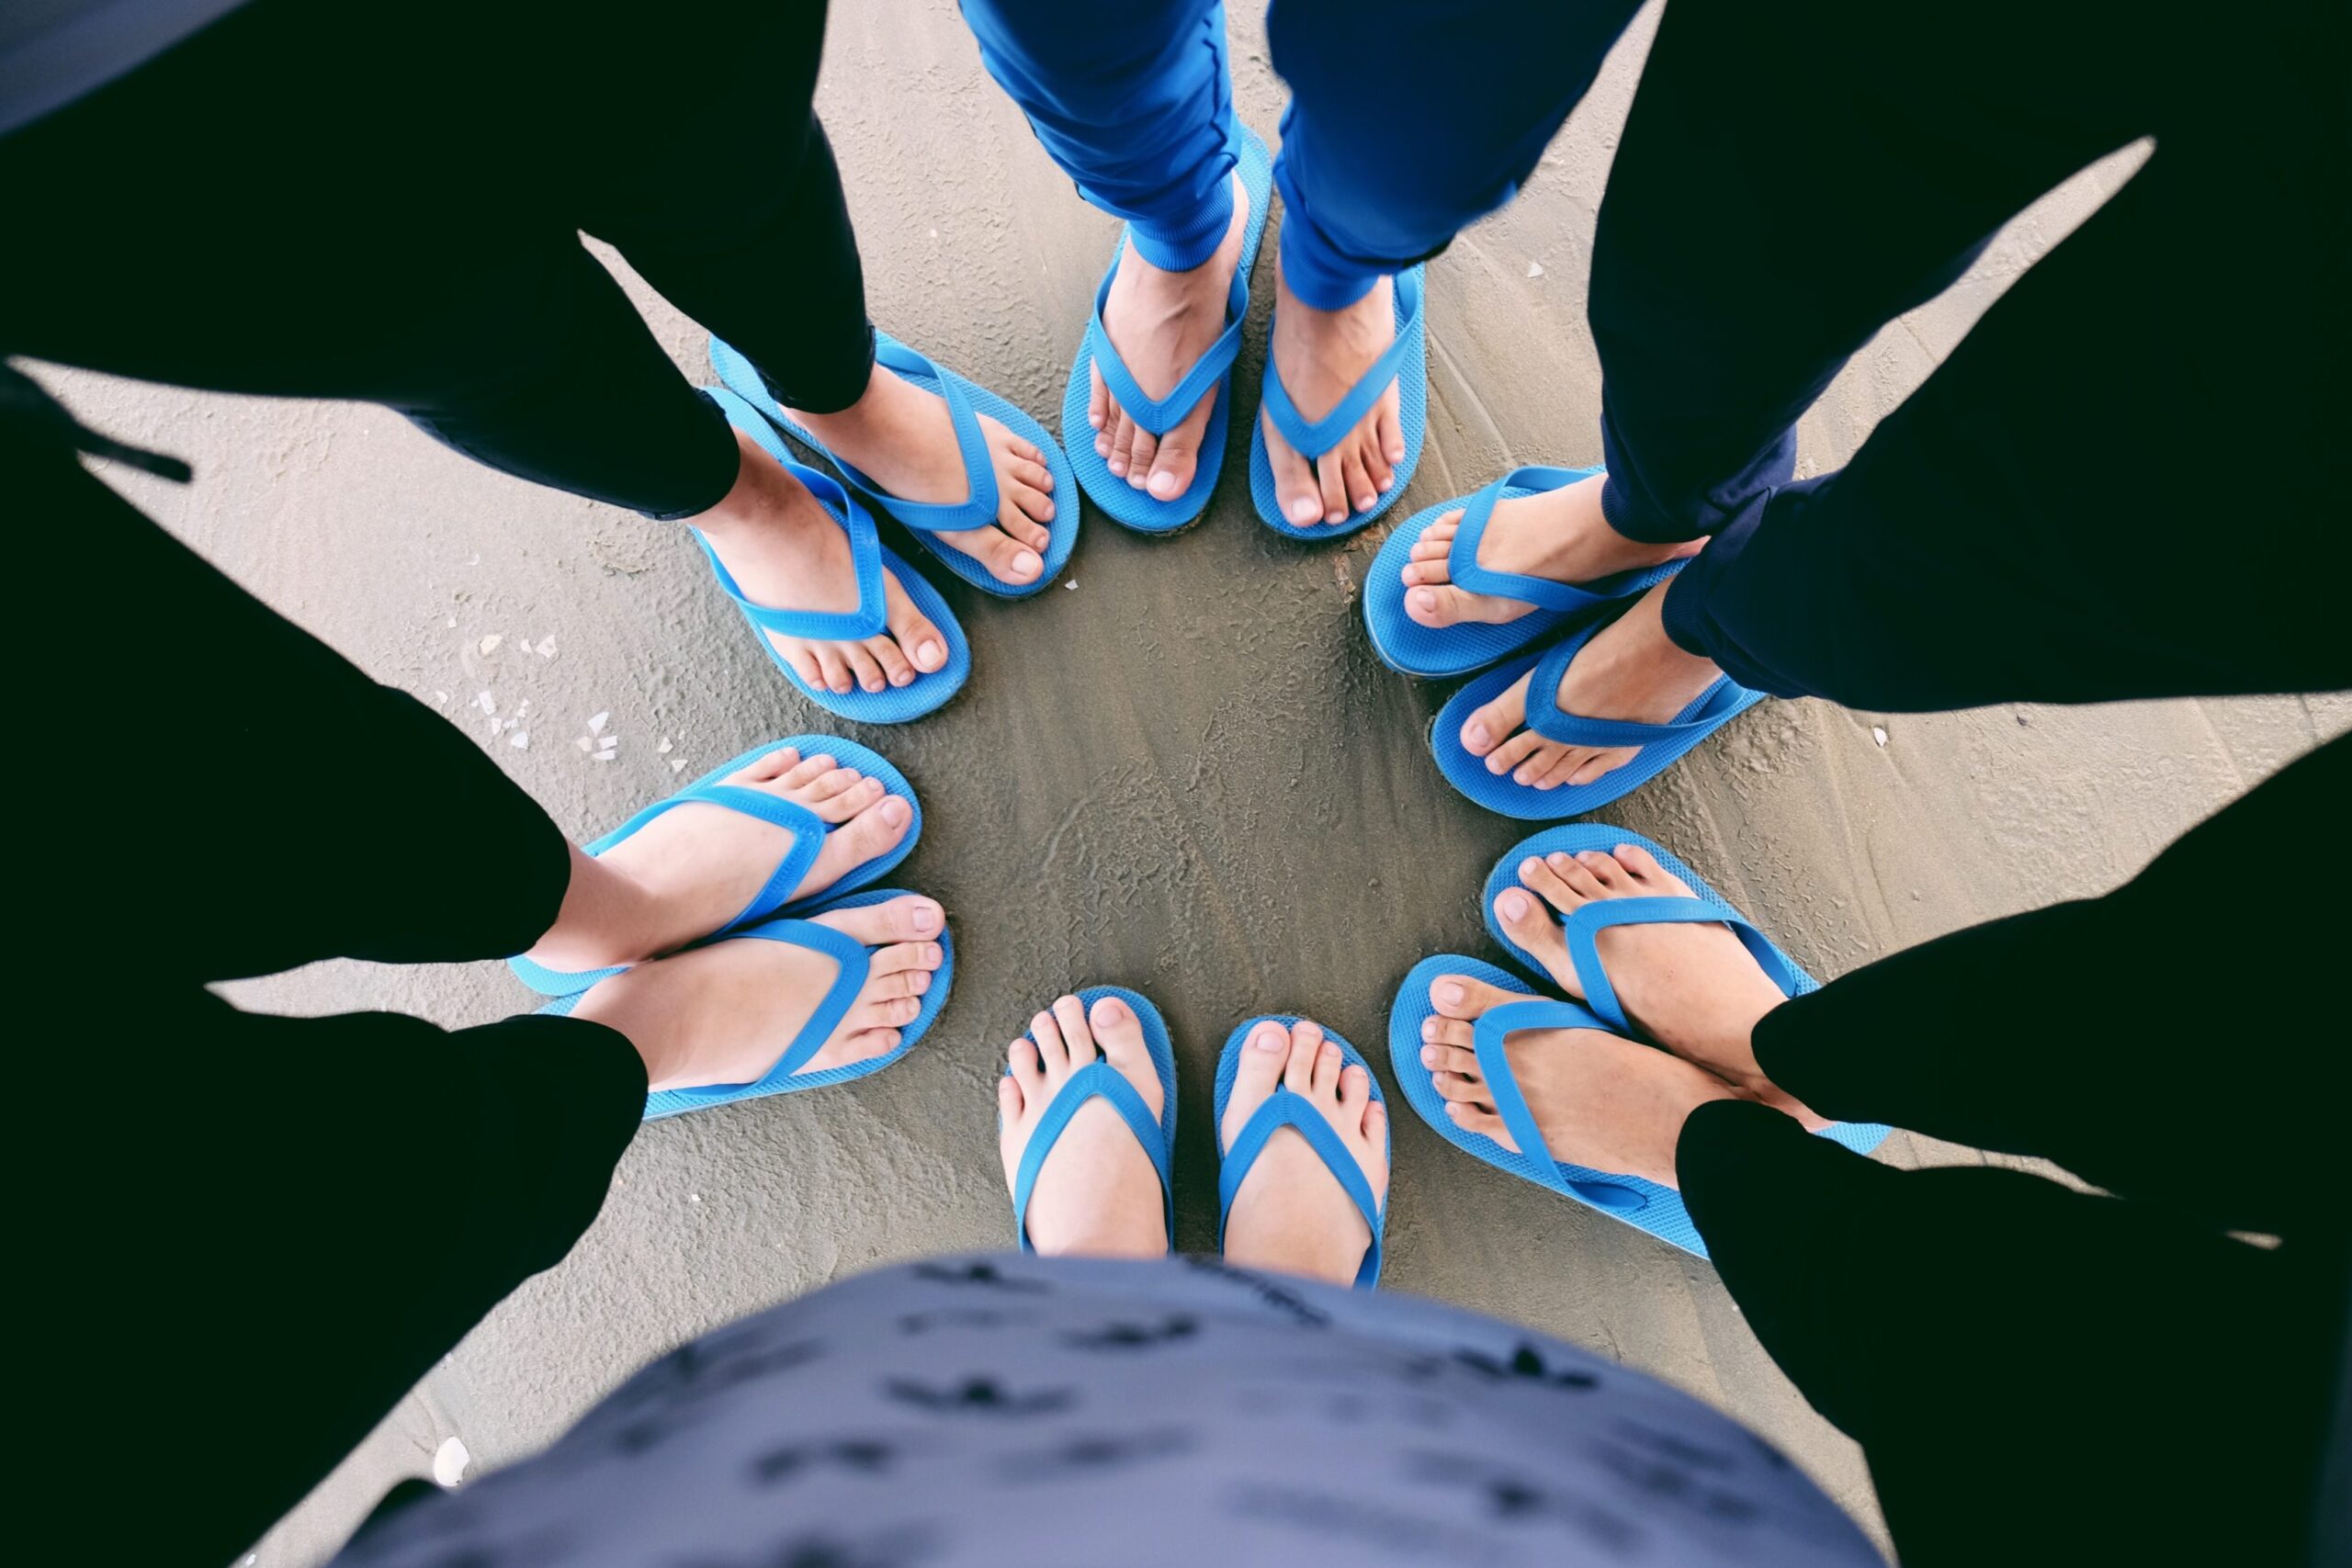 The feet of six people wearing blue flip flops